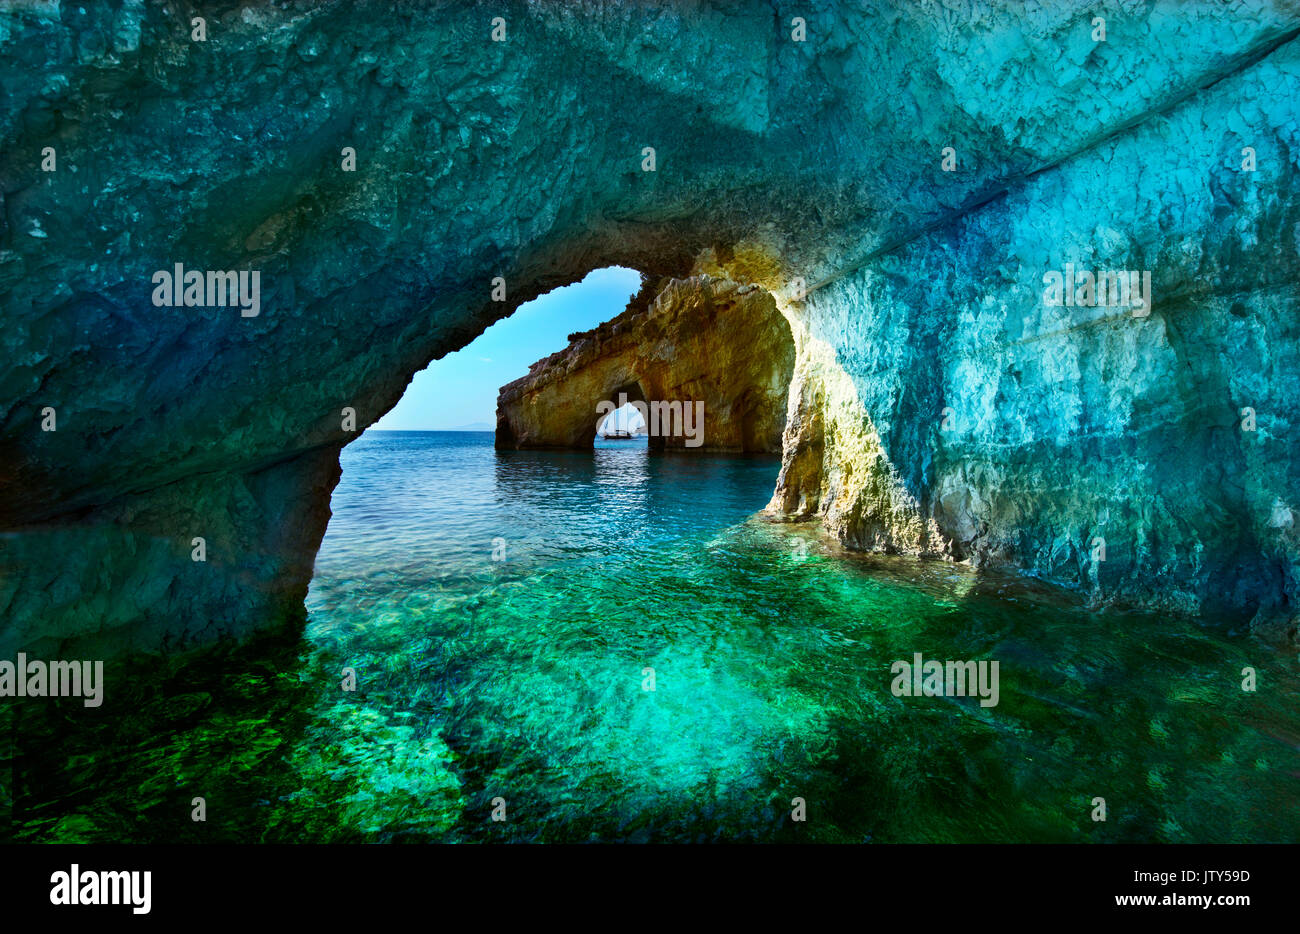 Griechenland, die Insel Zakynthos. Eine der schönsten blauen Höhlen in der Welt. Das Ionische Meer. Blauen Grotten der Insel Zakynthos Stockfoto